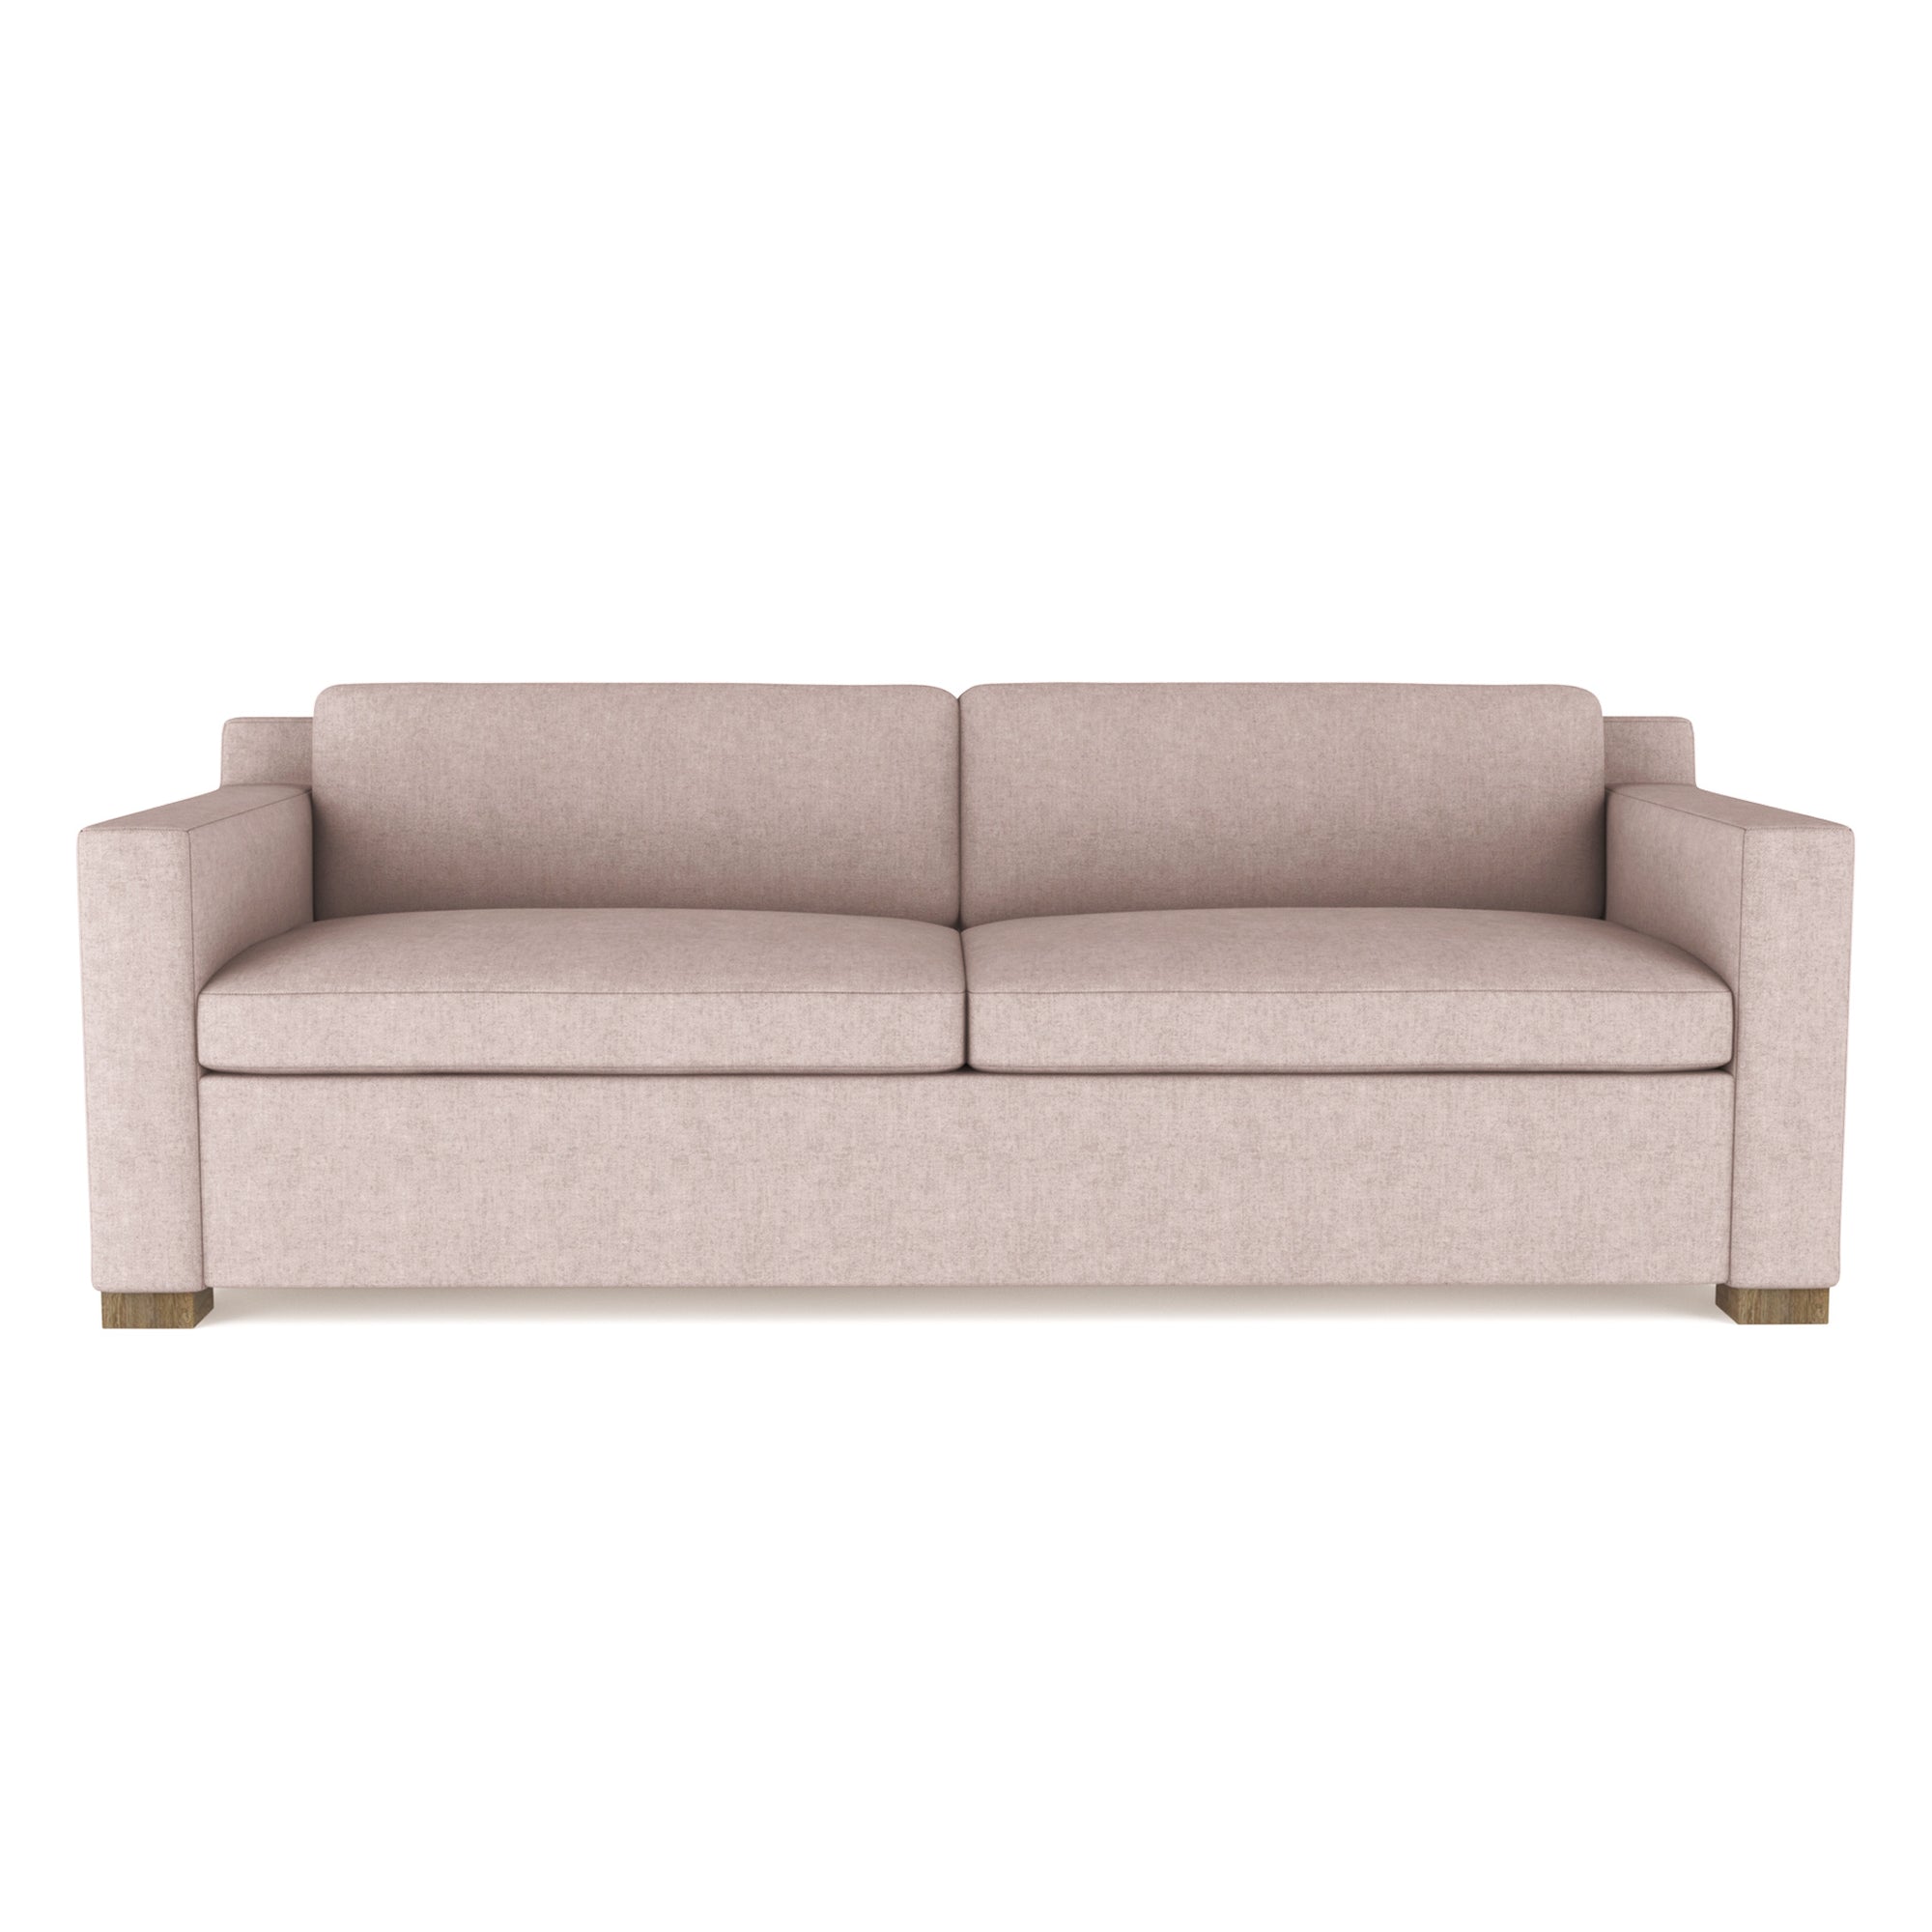 Mercer Sofa - Blush Plush Velvet